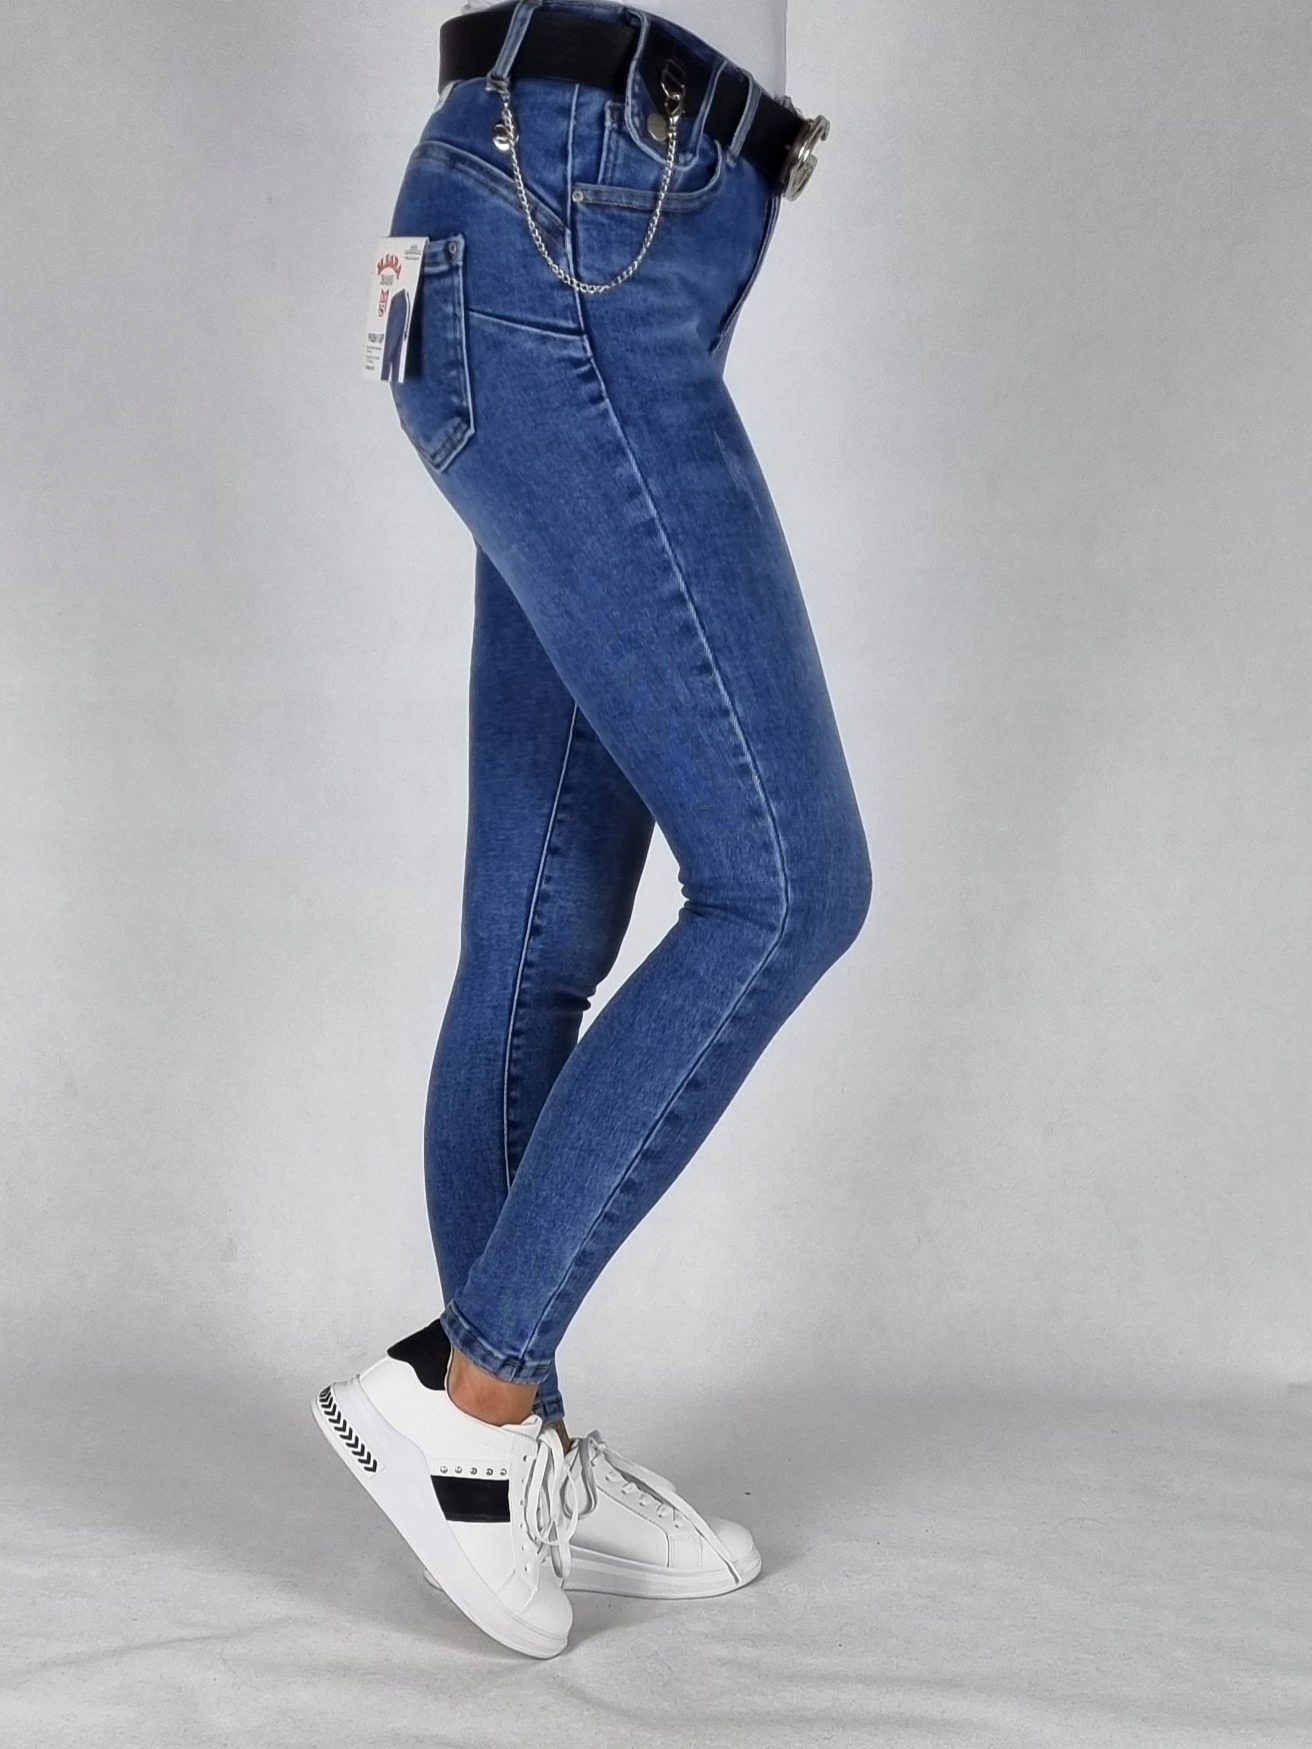 M. SARA джинсовые брюки с потертостями размер 27 Midsection (Waist Height) high